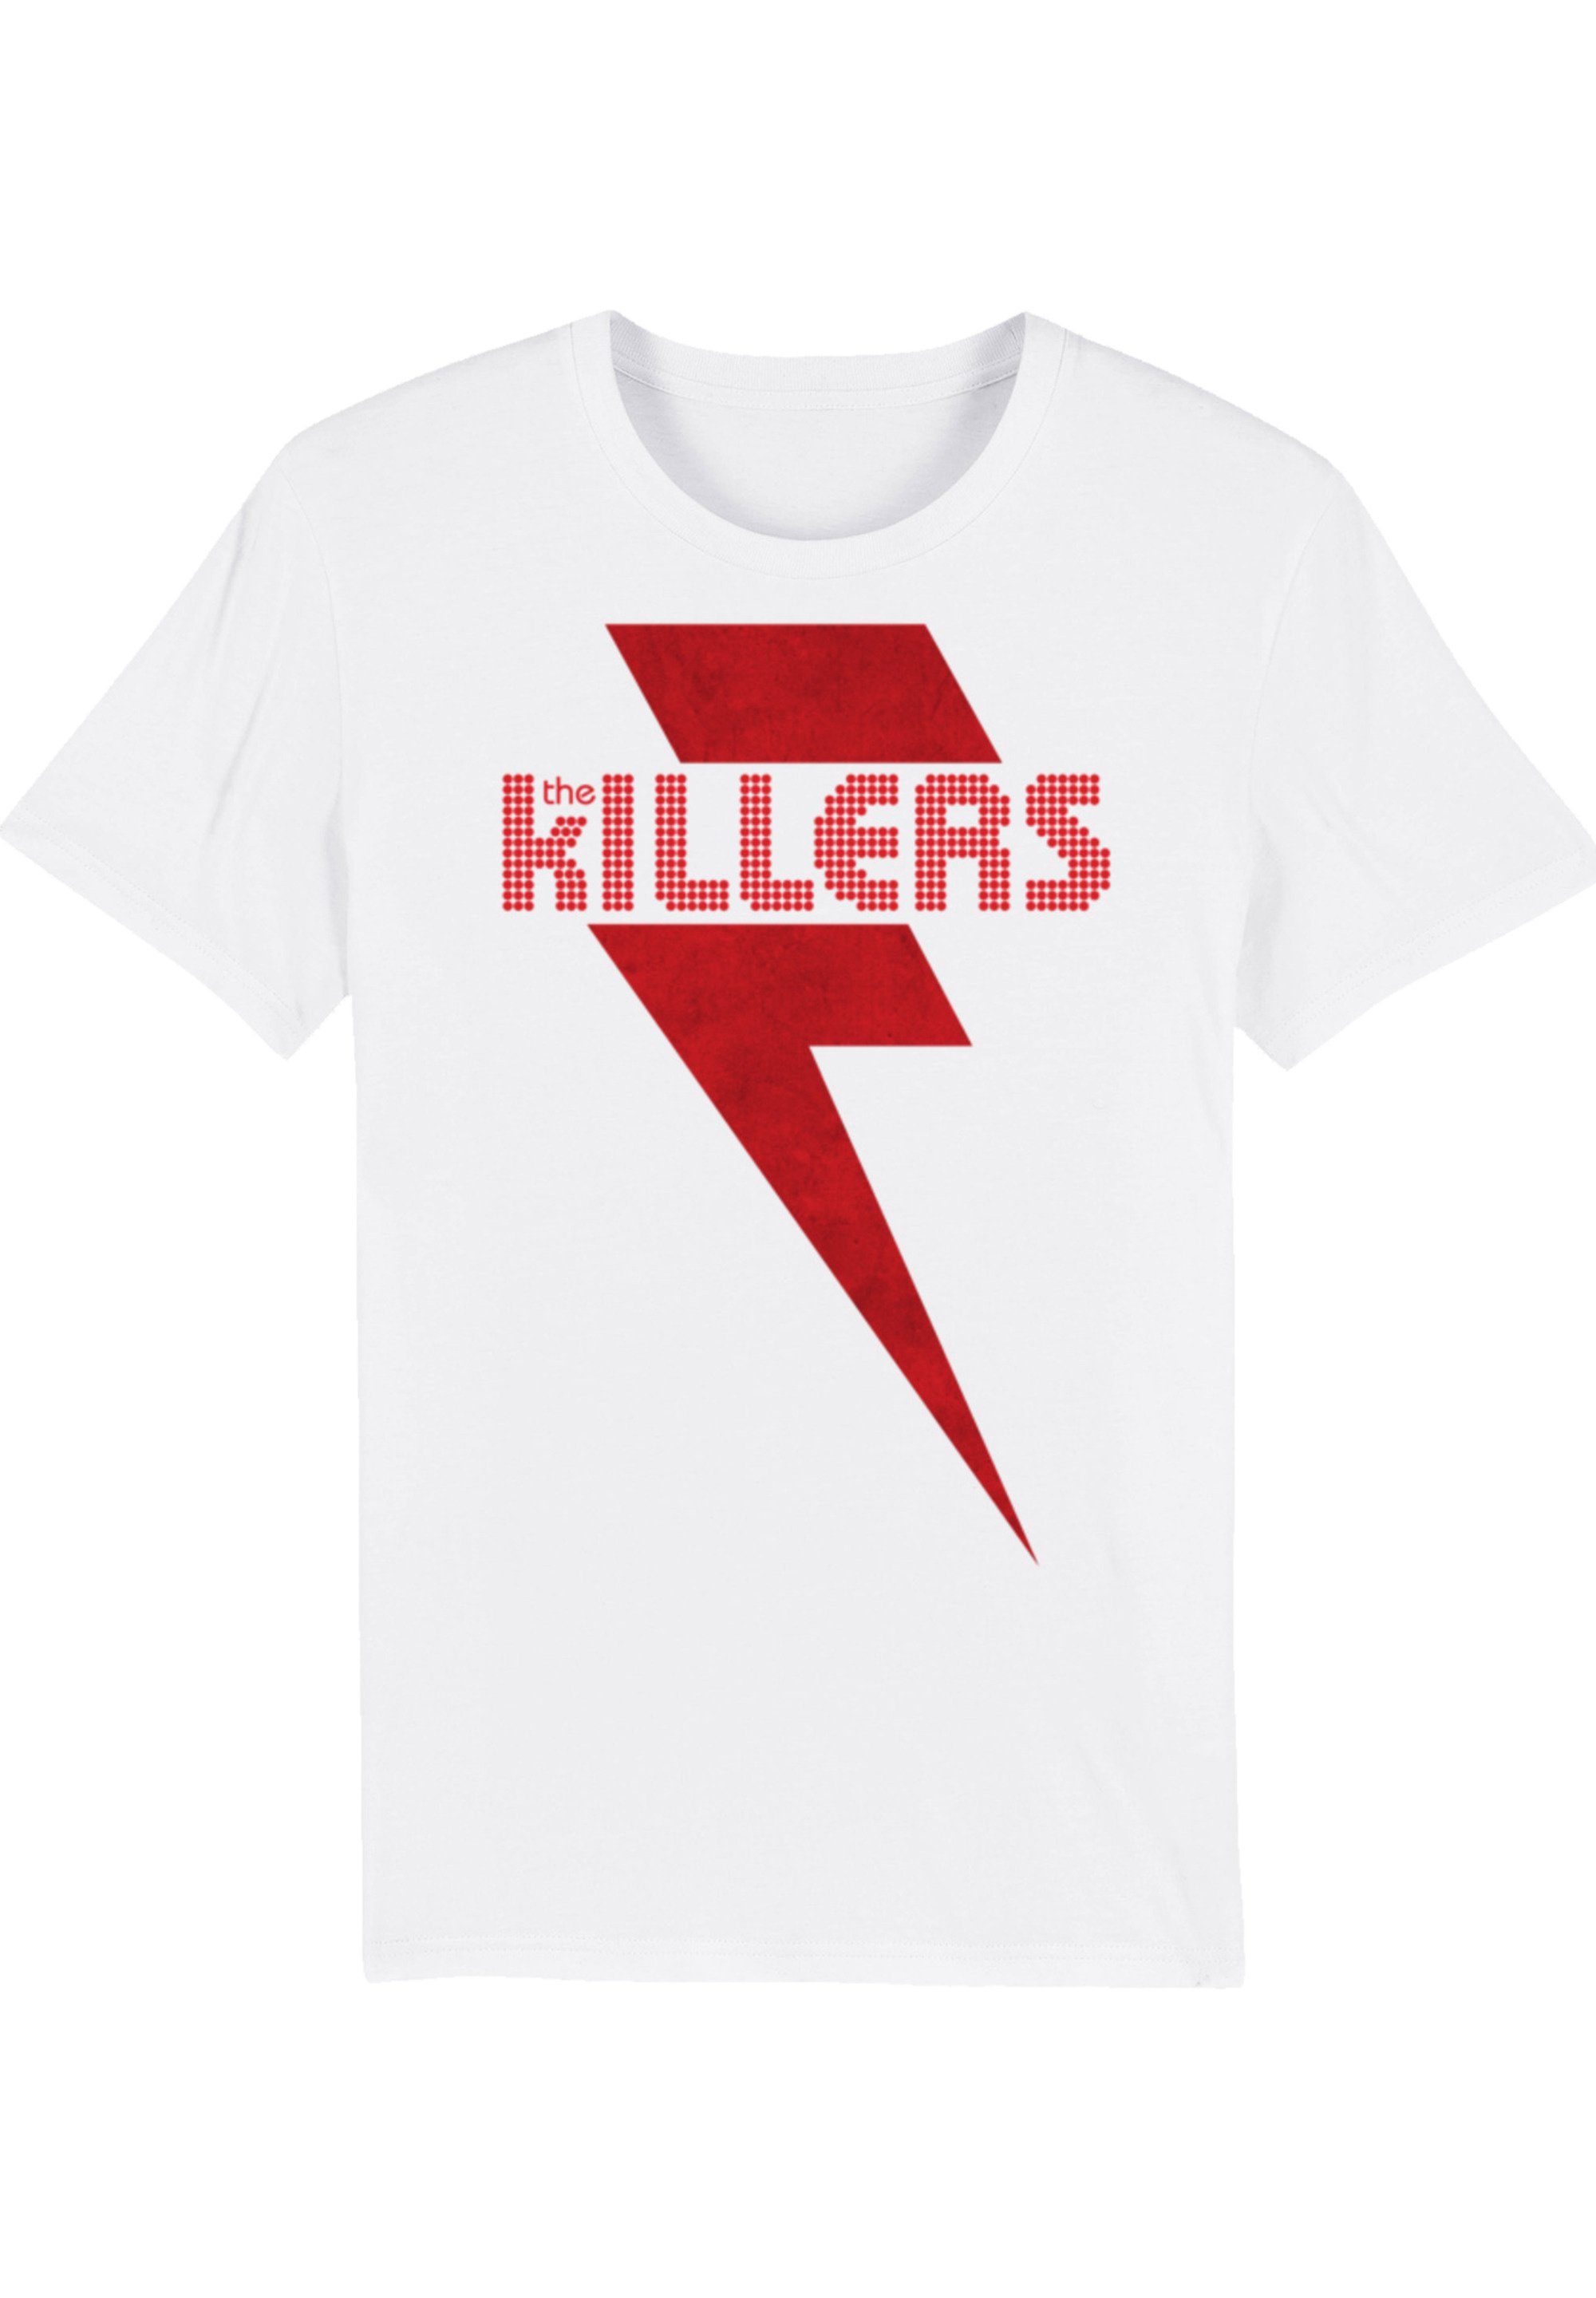 Killers Bolt The vielseitig Print, und Komfortabel F4NT4STIC Red T-Shirt kombinierbar